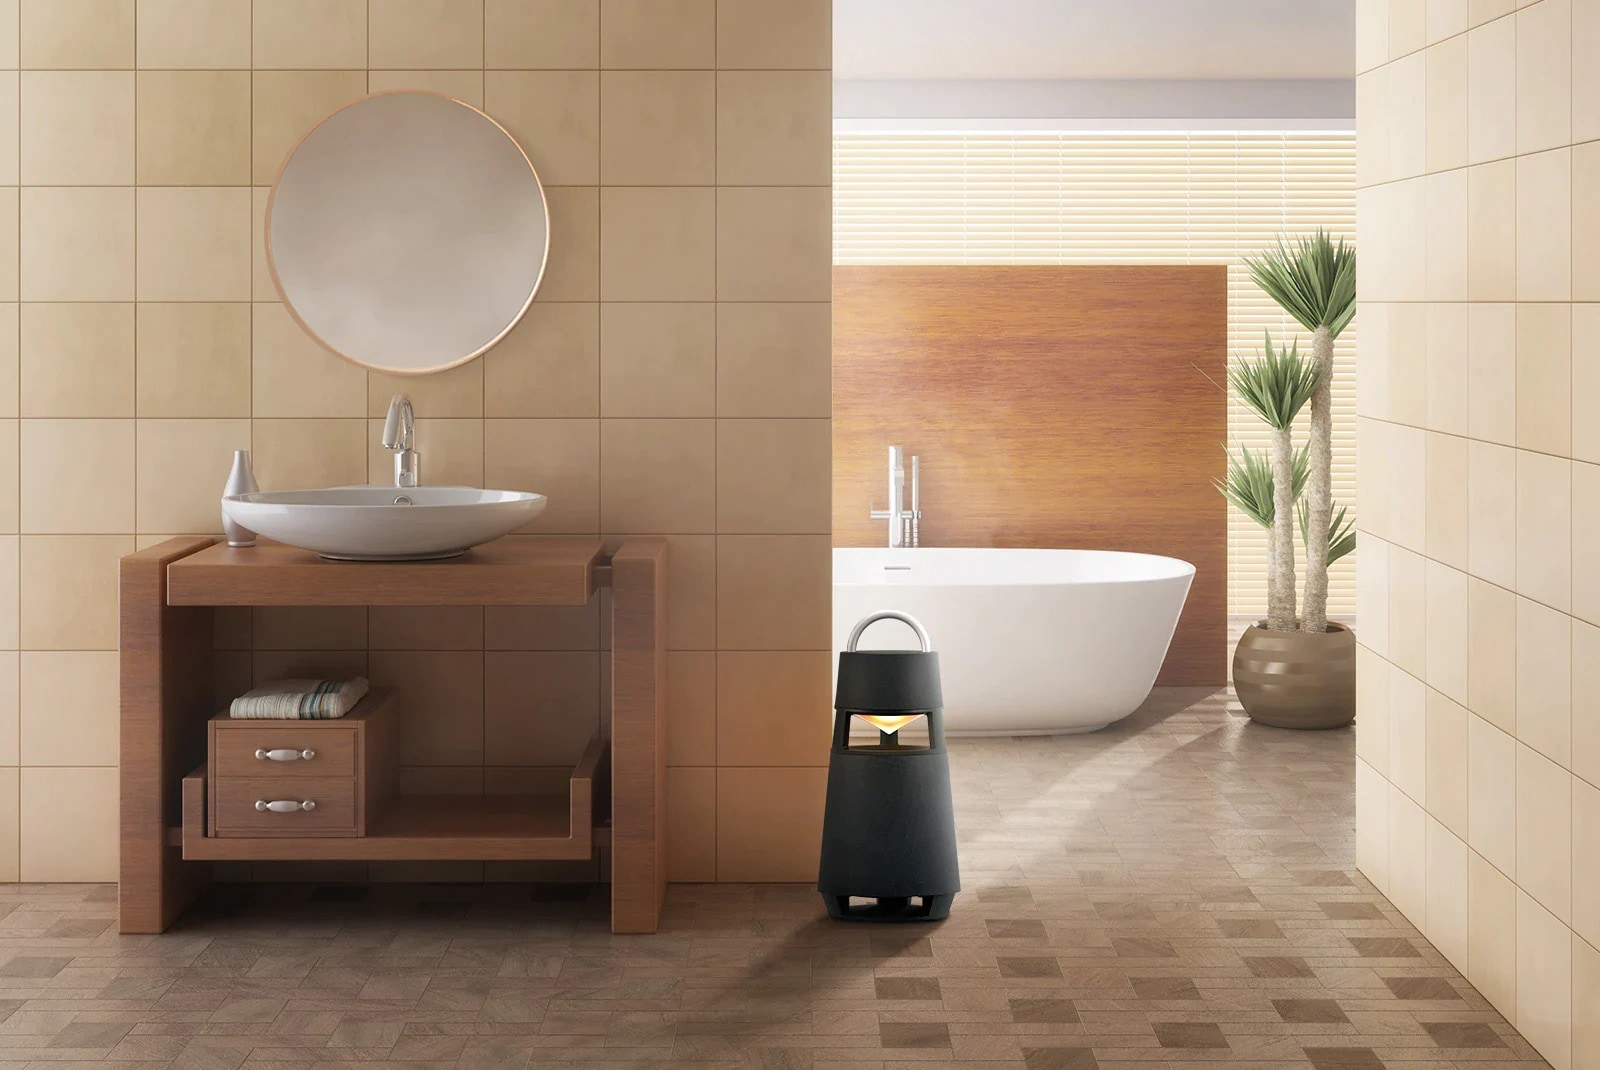 Εικόνα του XBOOM 360 που είναι τοποθετημένο σε ένα σχετικά υγρό μπάνιο, υποδεικνύοντας την αντοχή του προϊόντος στην υγρασία.